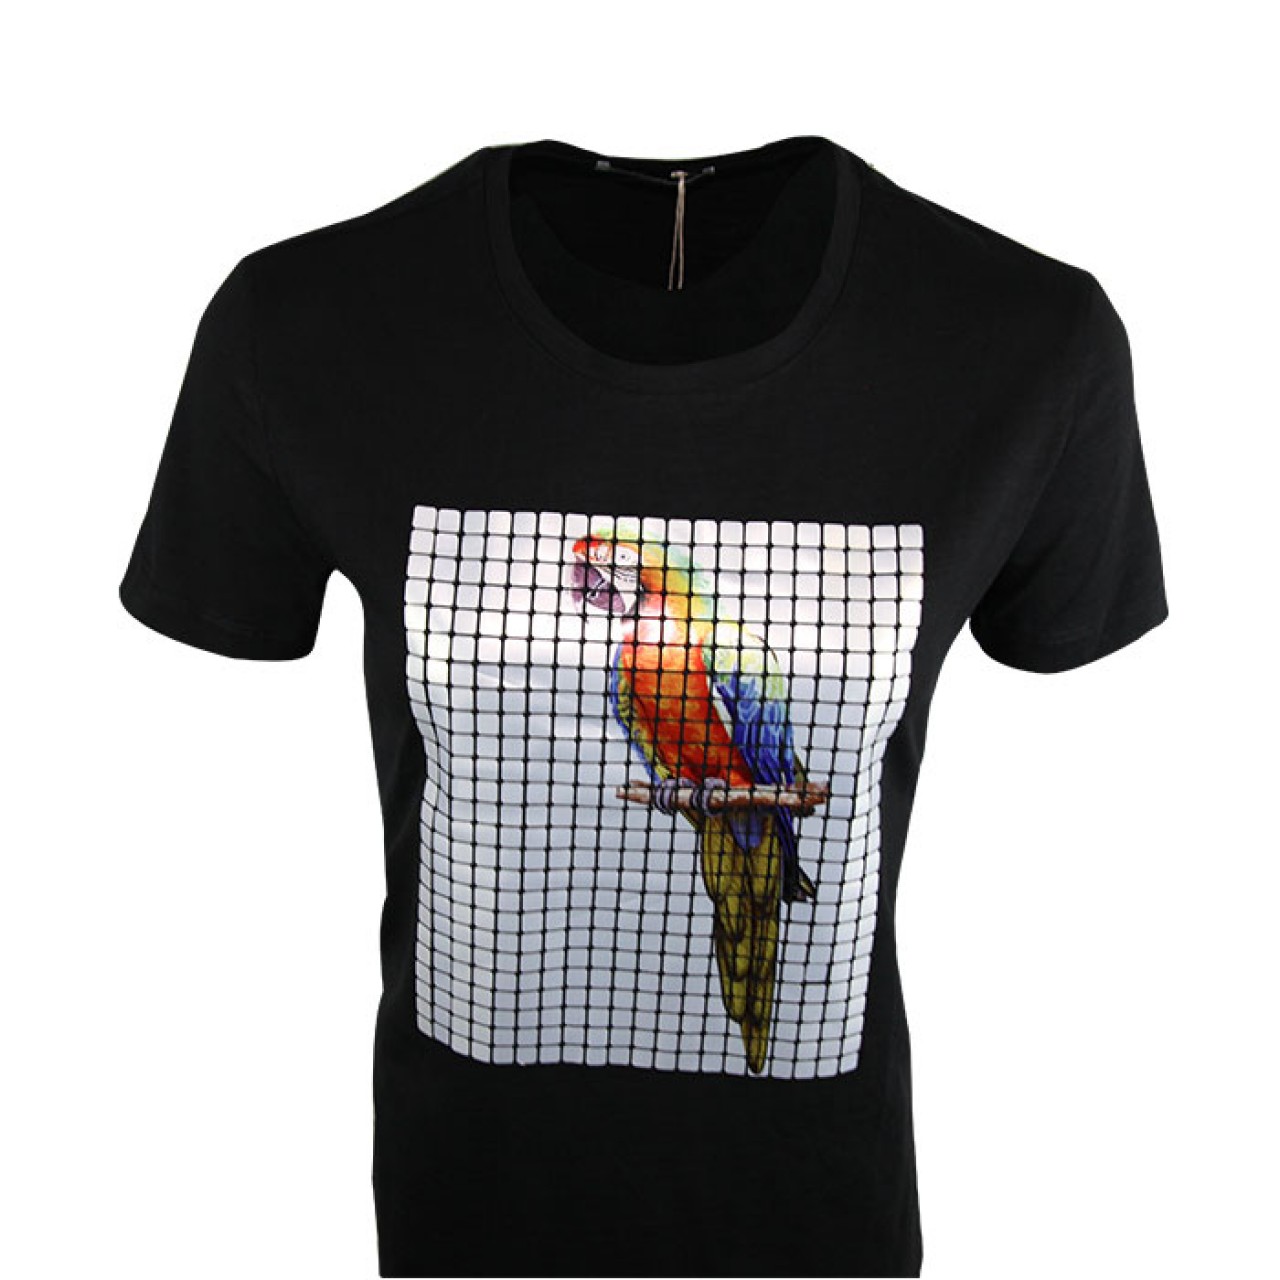 Men's Black Parrot Graphic Print Design Animation T Shirts